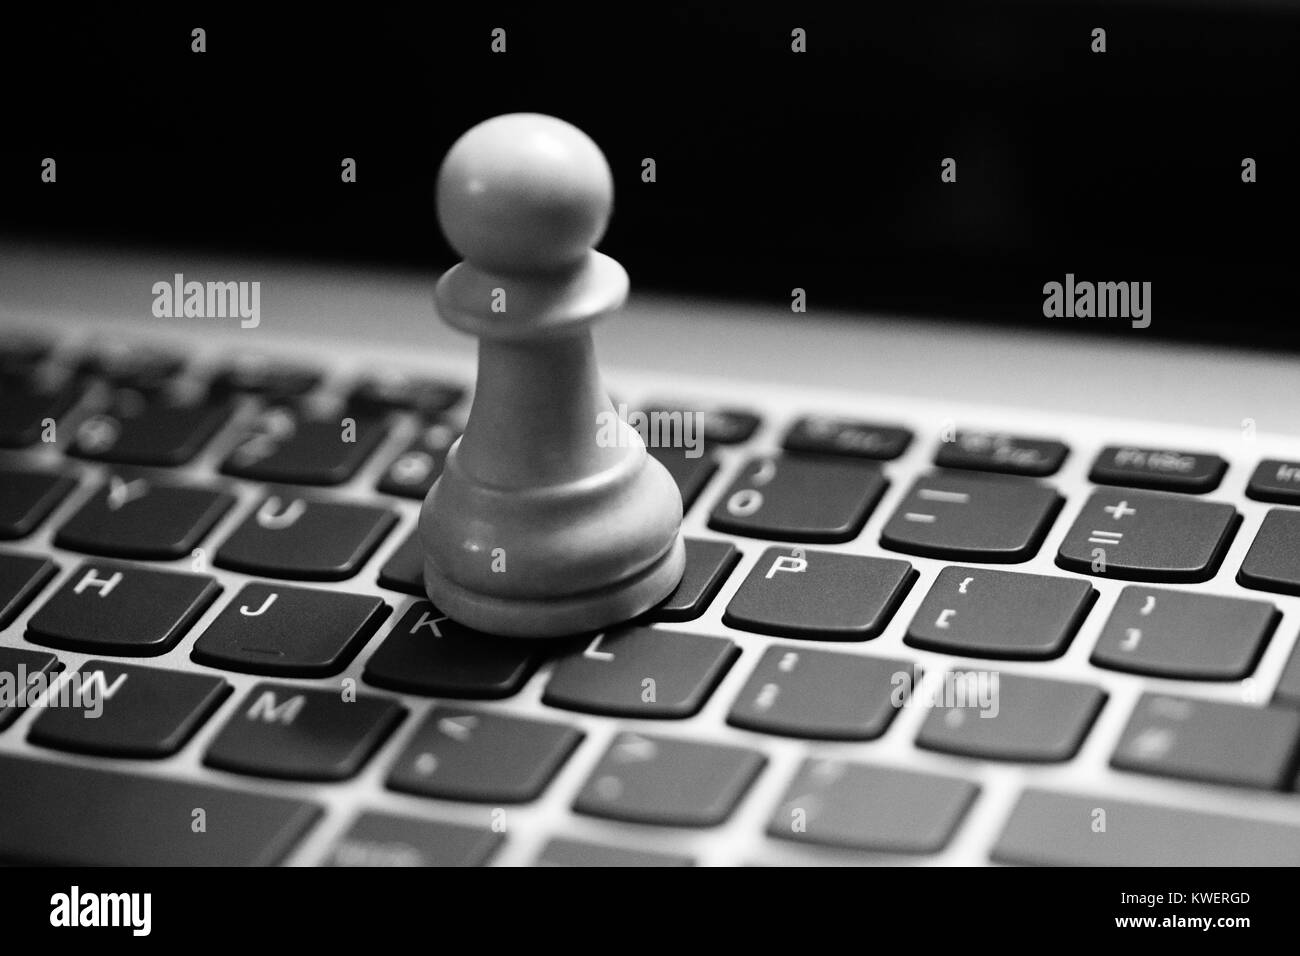 Les pions d'Échecs / kings on laptop keyboard - stratégie numérique Banque D'Images